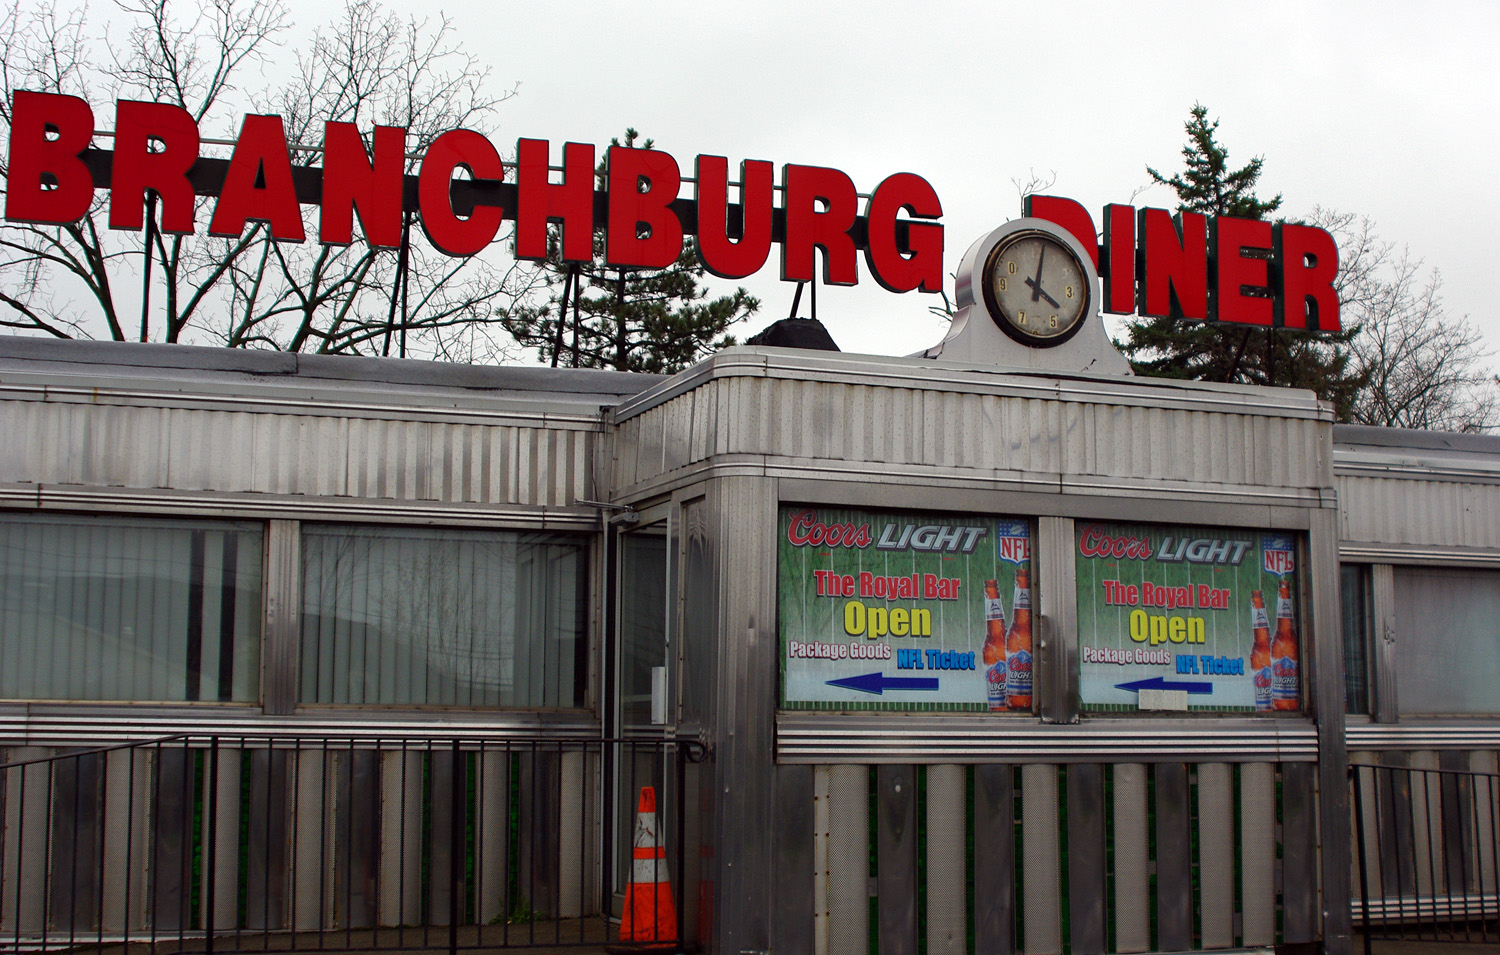 Branchburg Diner Revisited